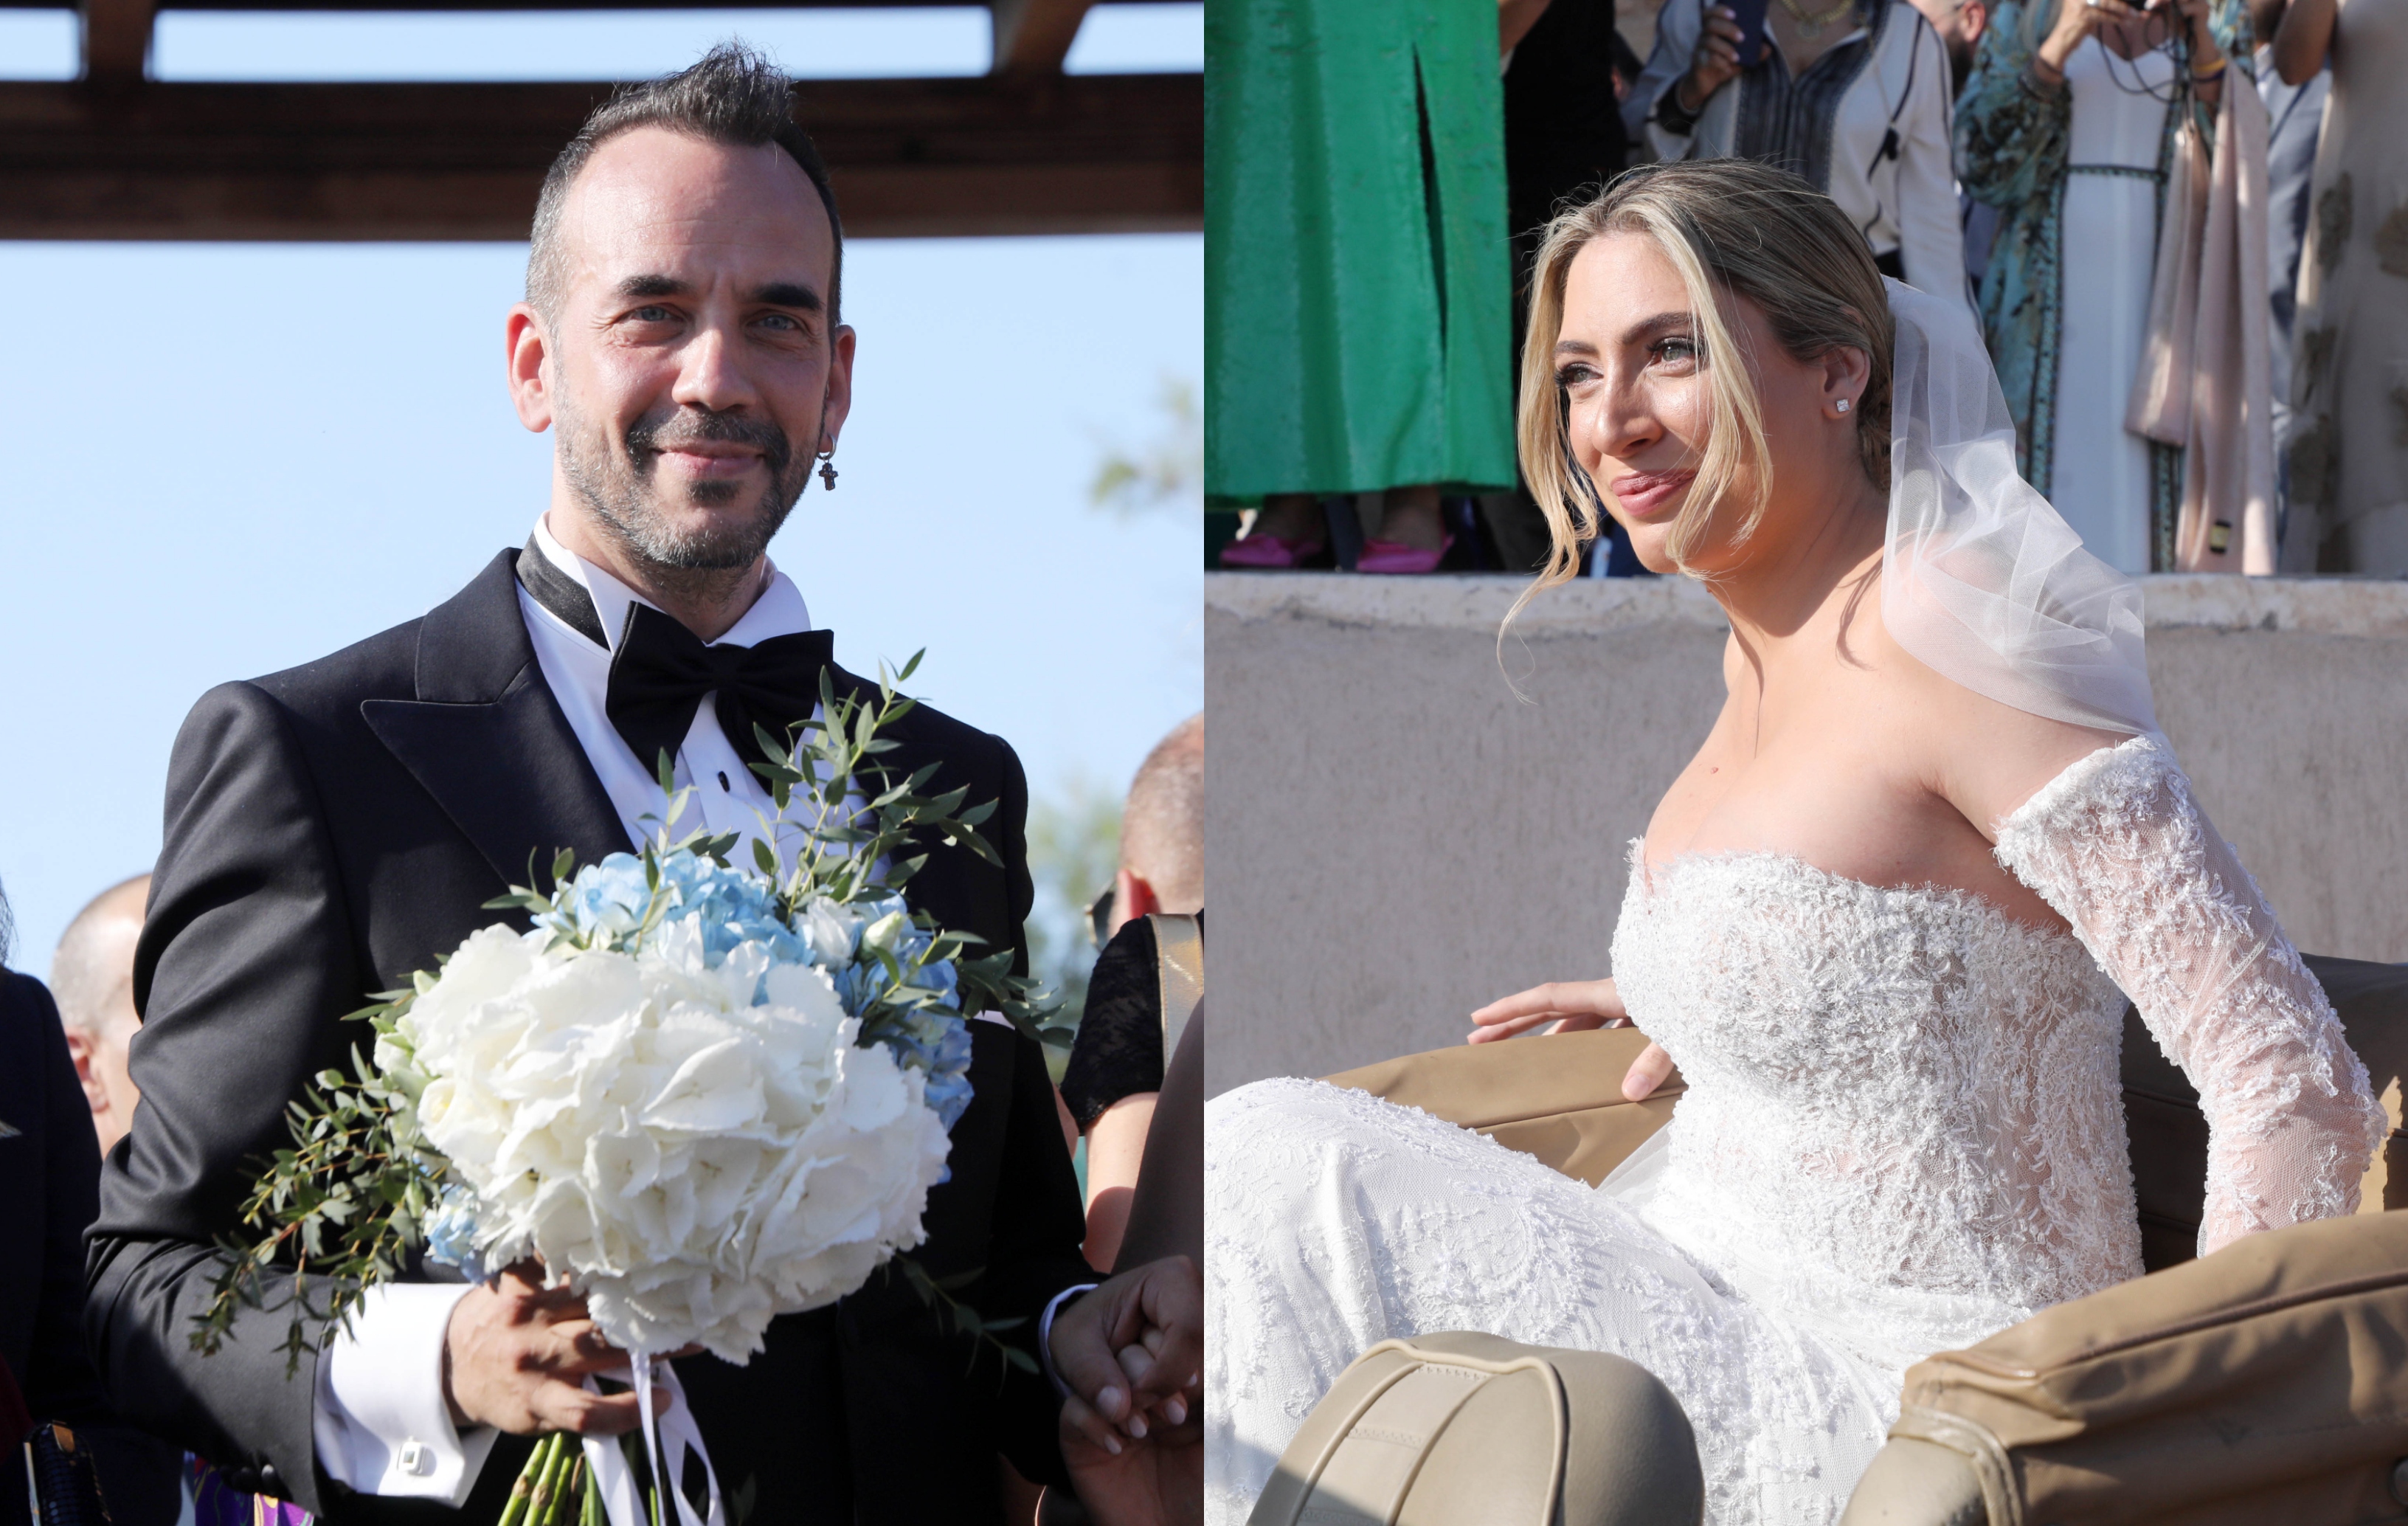 Μουζουράκης - Κόζαρη: Η άφιξη της νύφης στην εκκλησία, το τρυφερό φιλί και οι έξι κουμπάροι